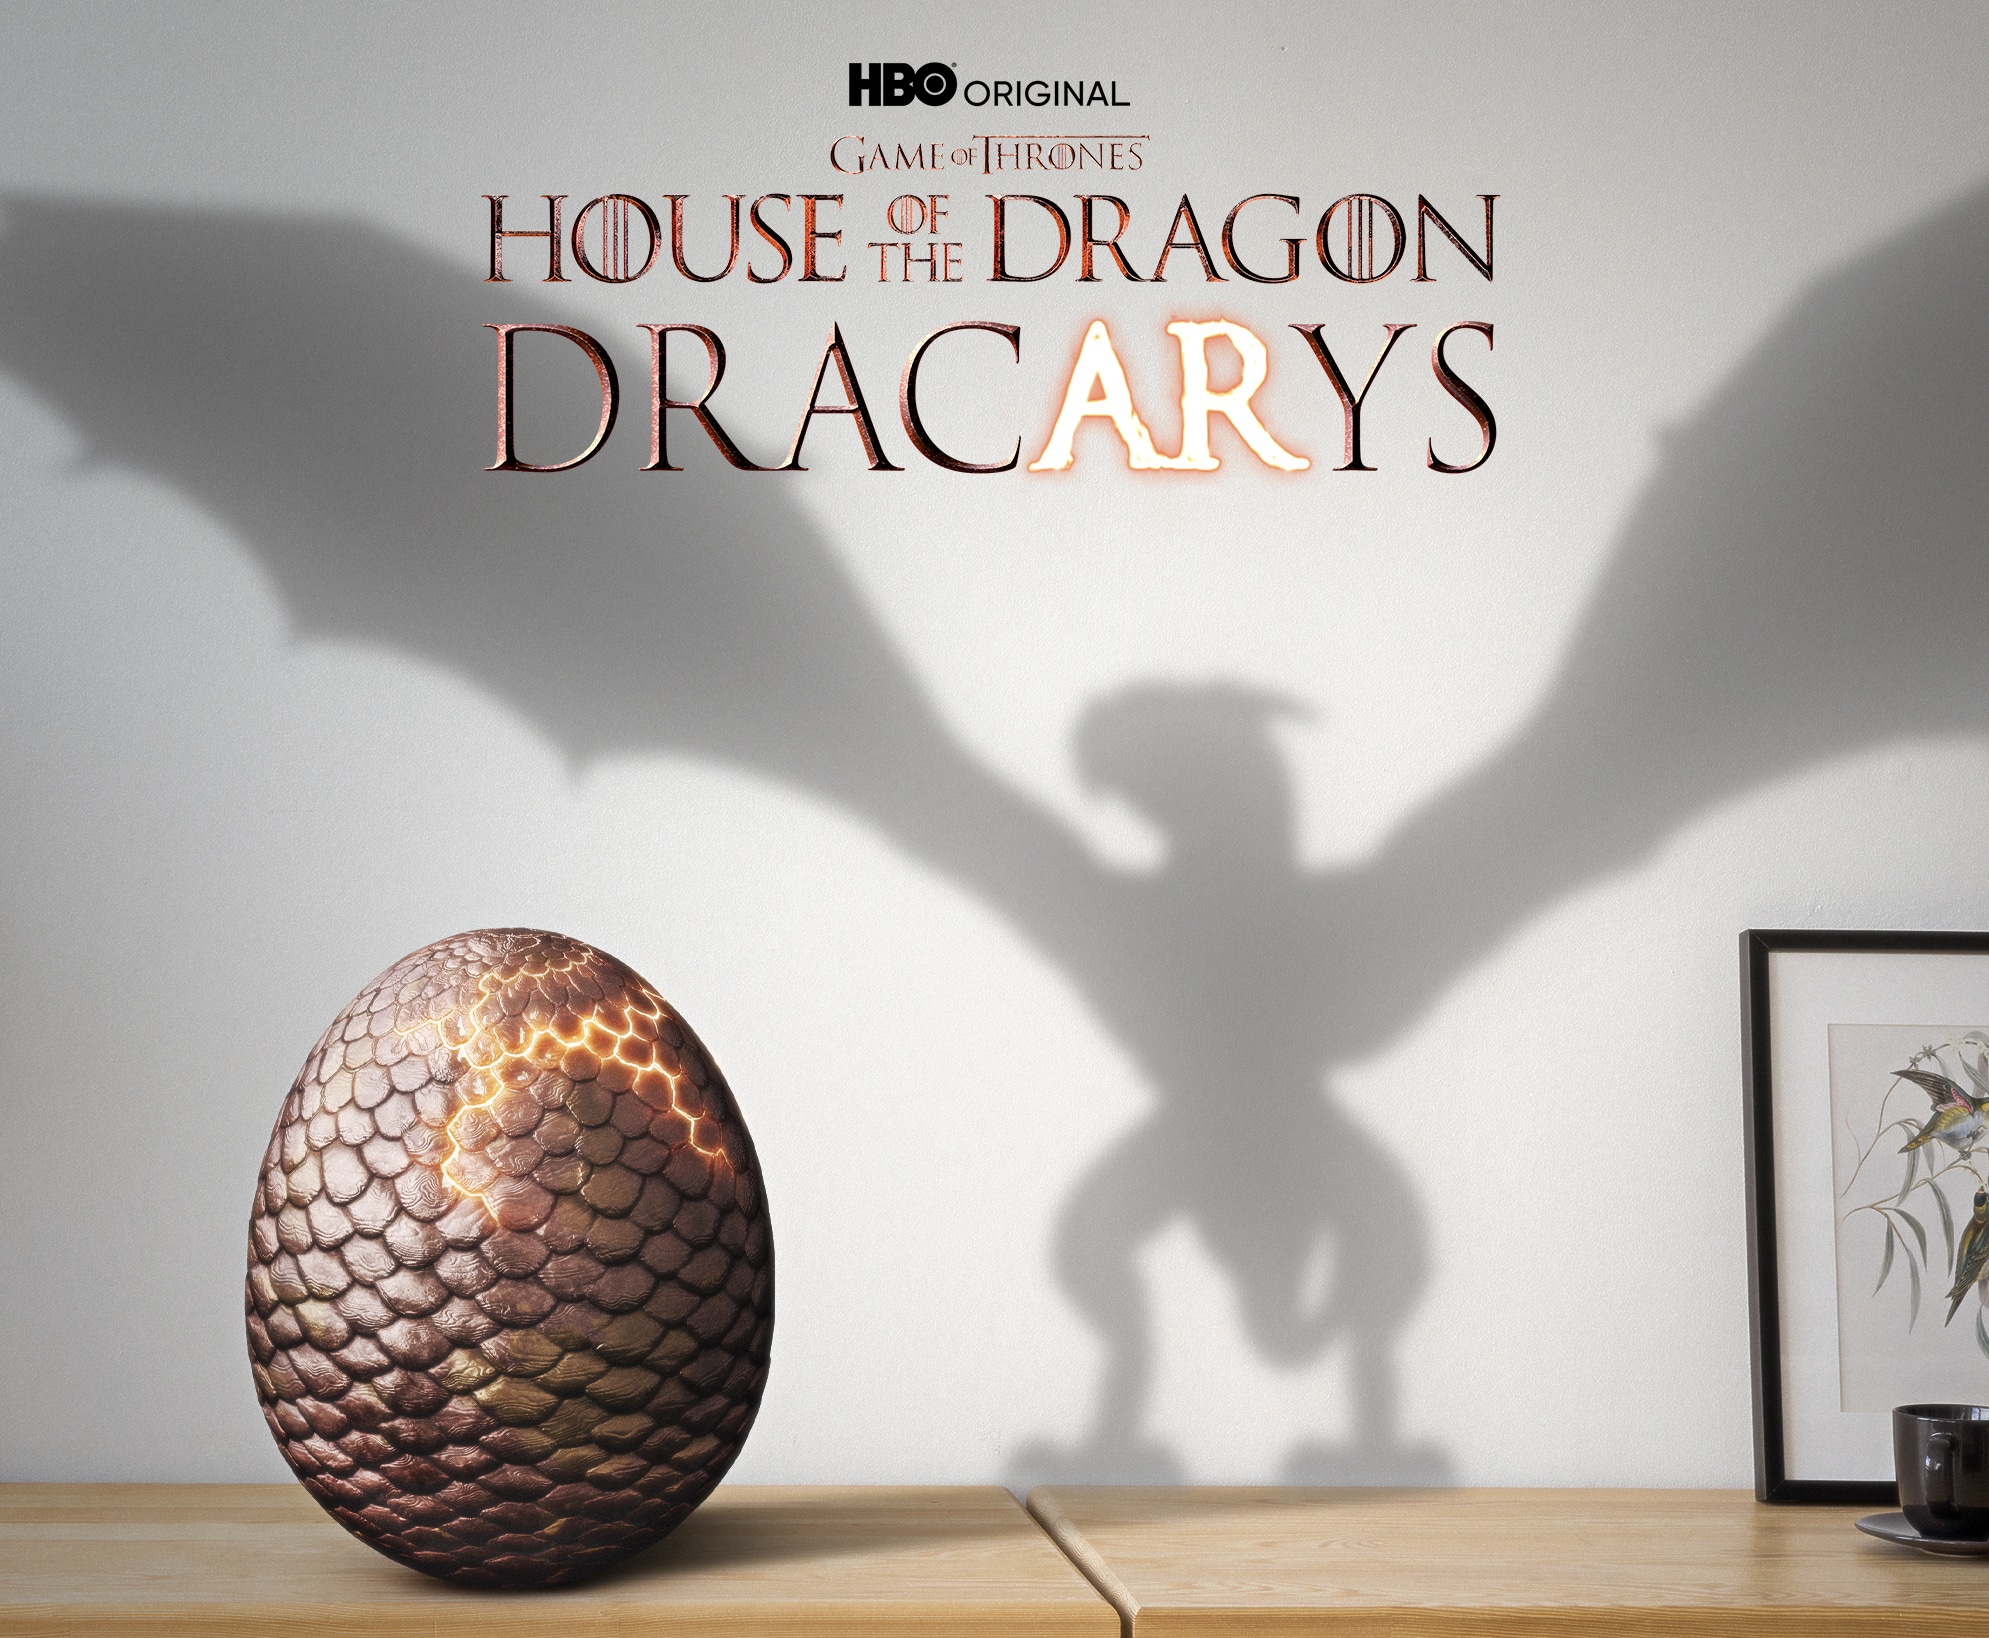 House of the Dragon: spin-off de Game of Thrones estreia em 2022